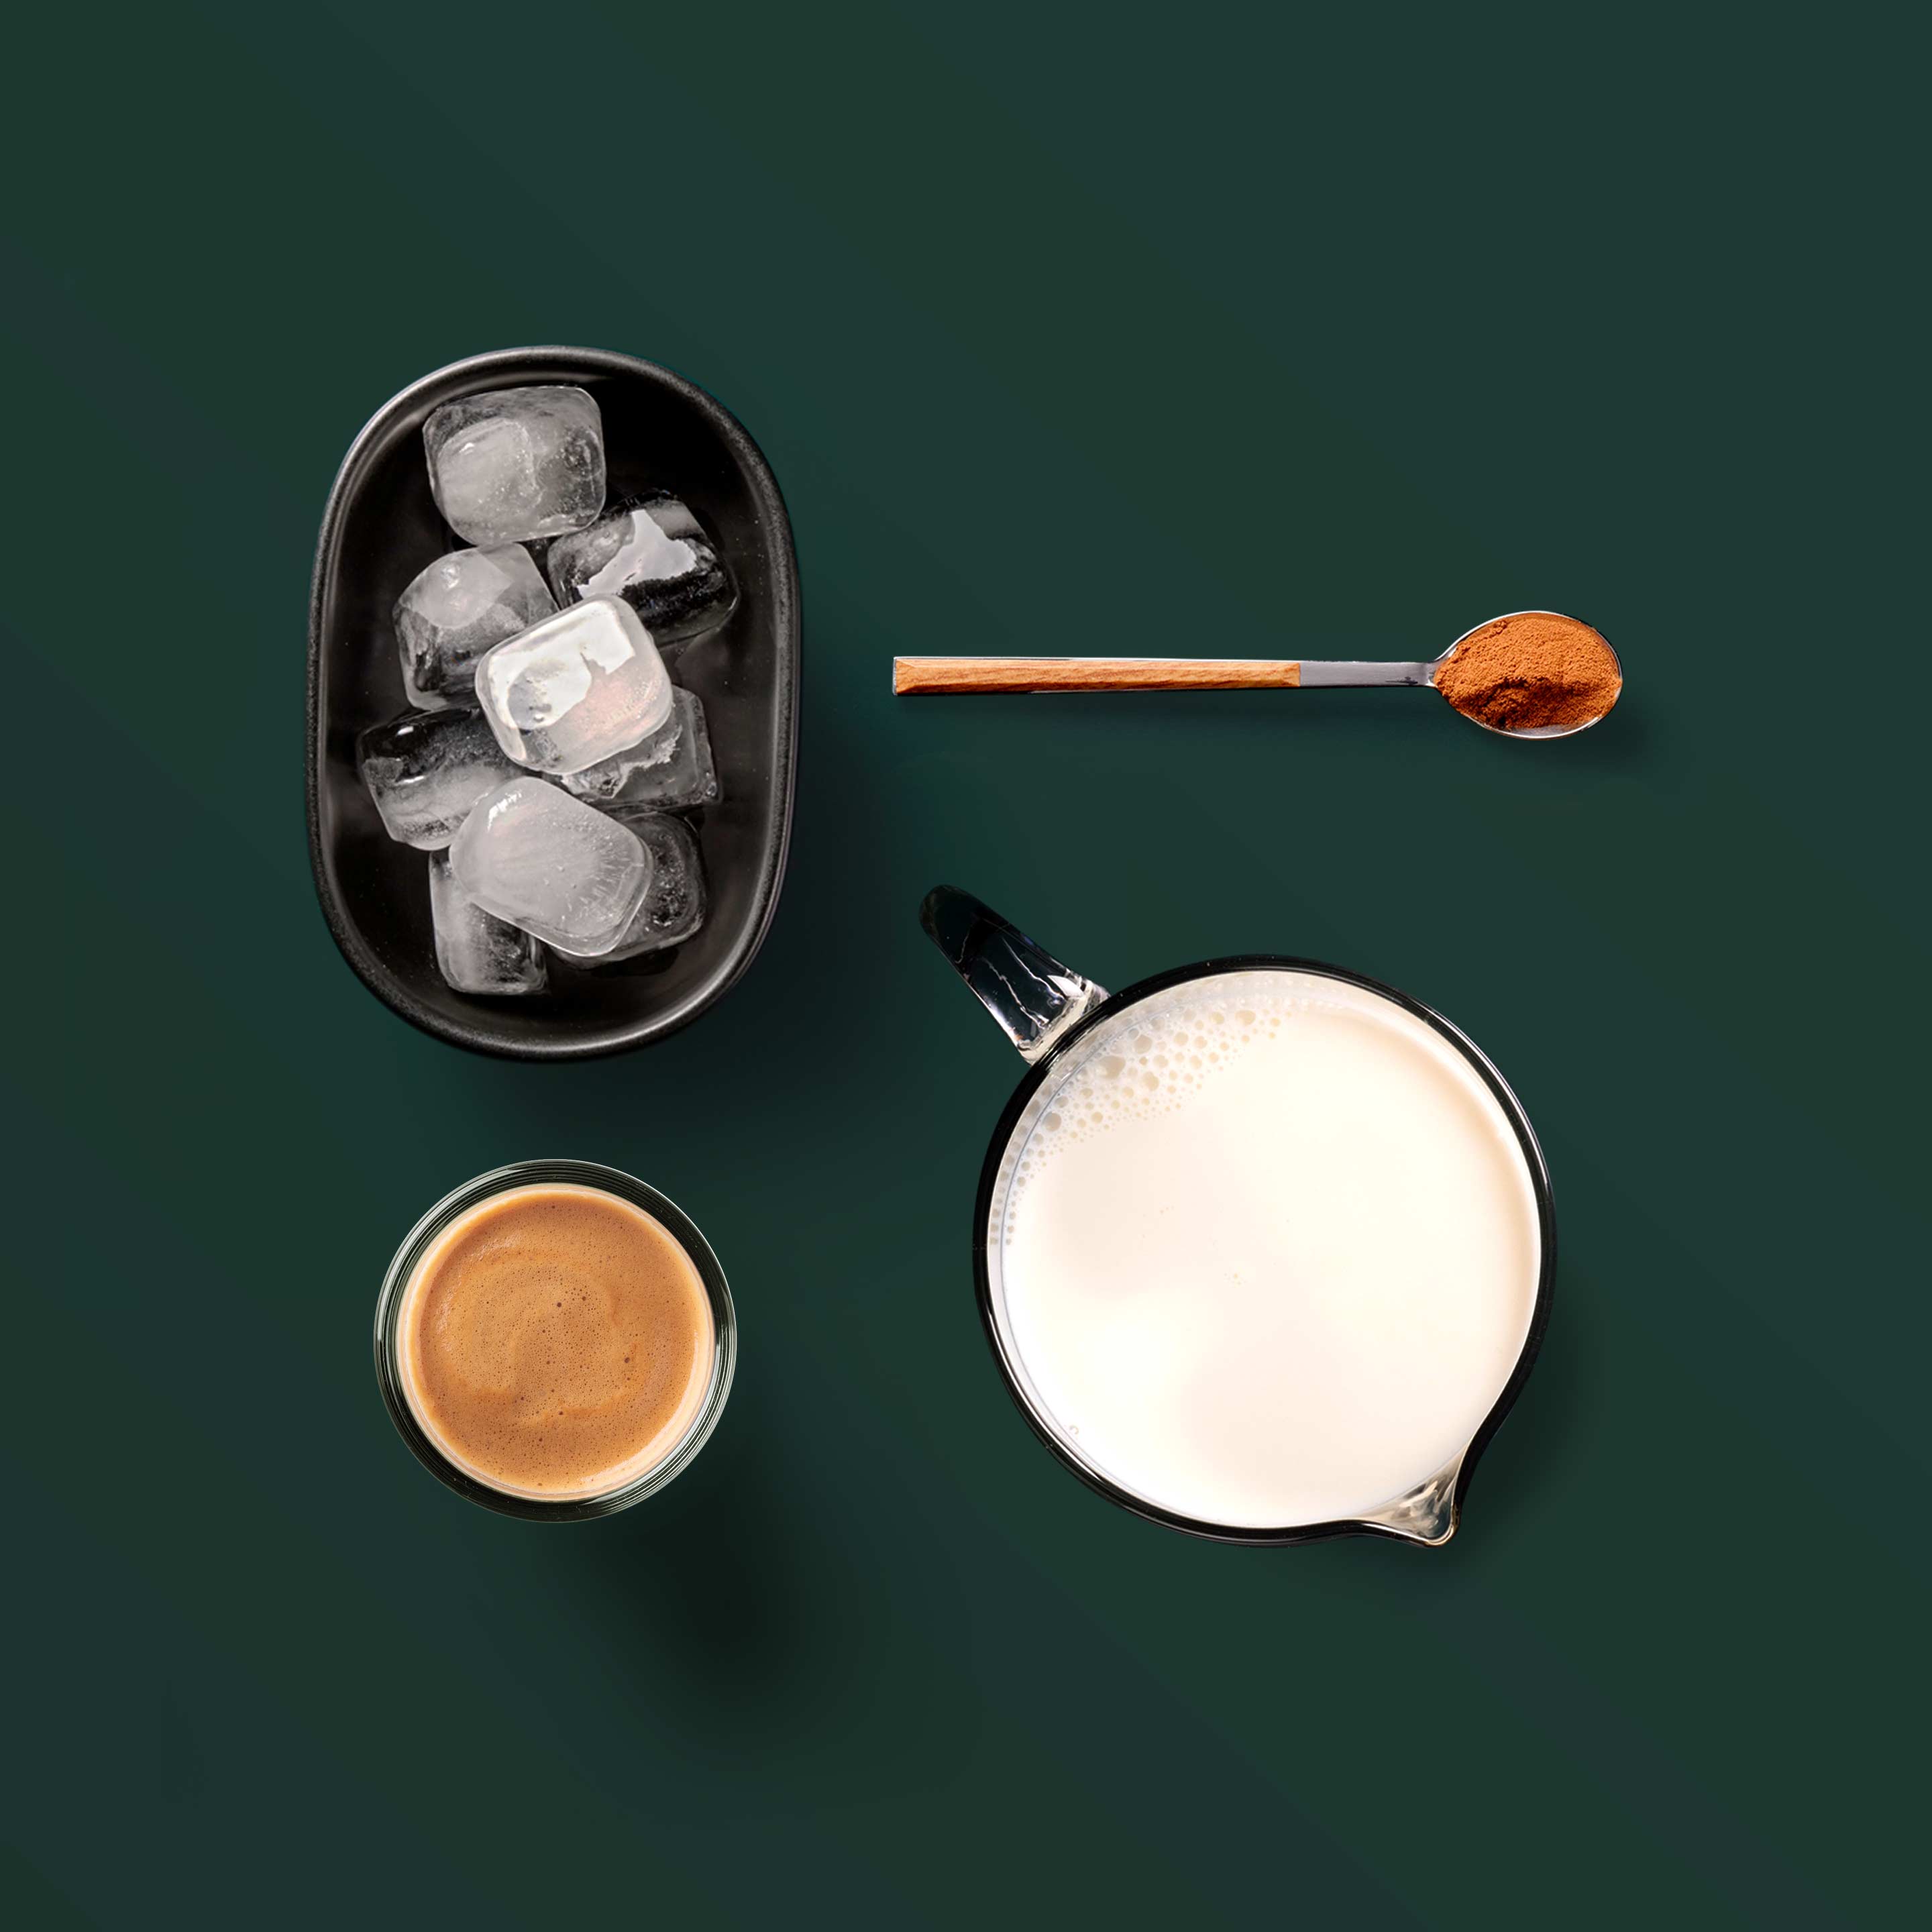 Ingrediencie na ľadové cappuccino: Espresso, škorica, mlieko, kocky ľadu